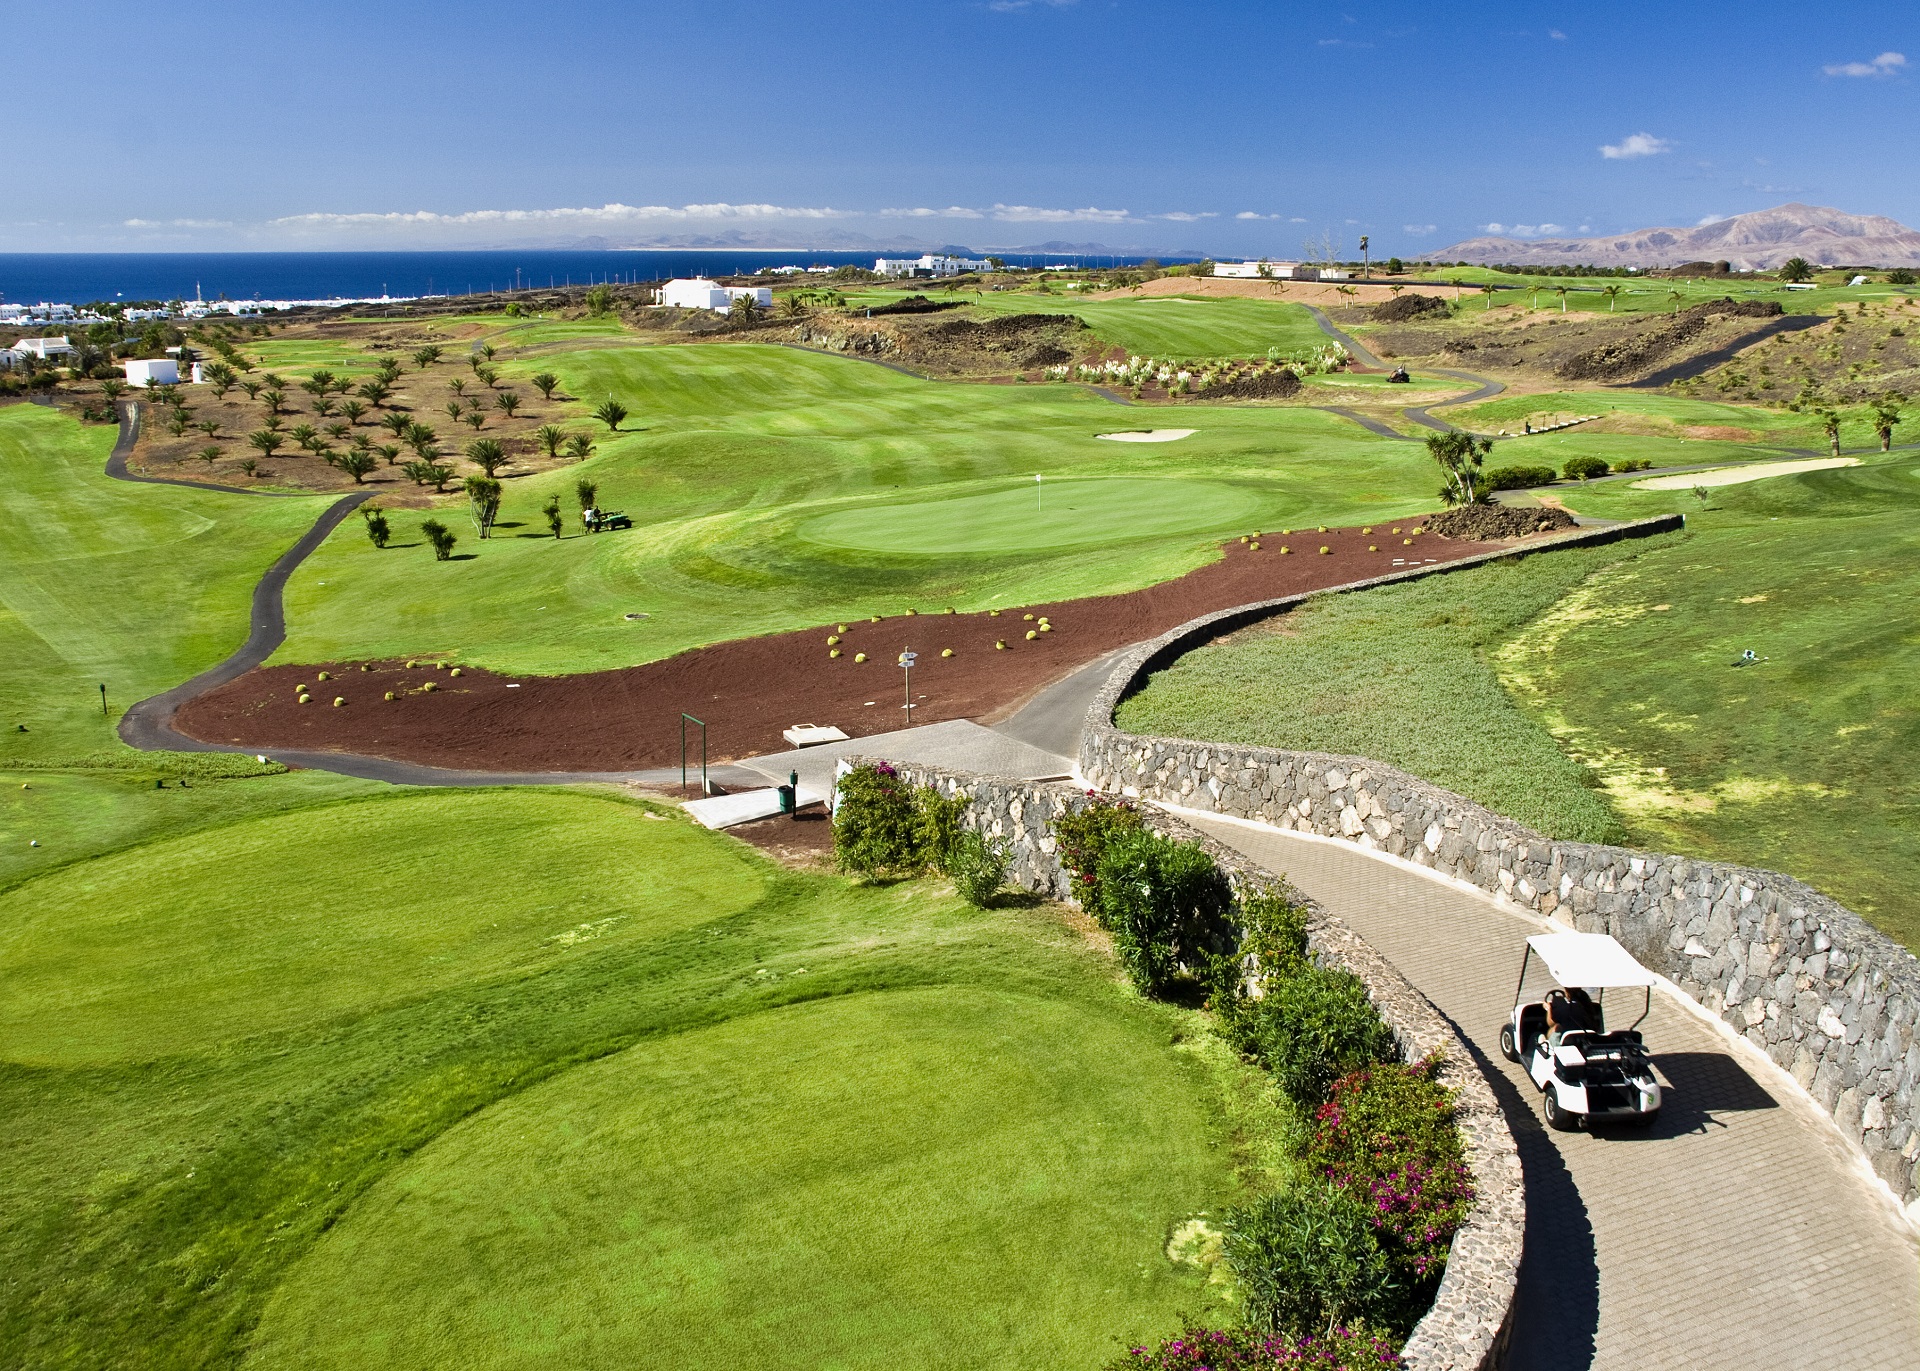 Lanzarote Golf